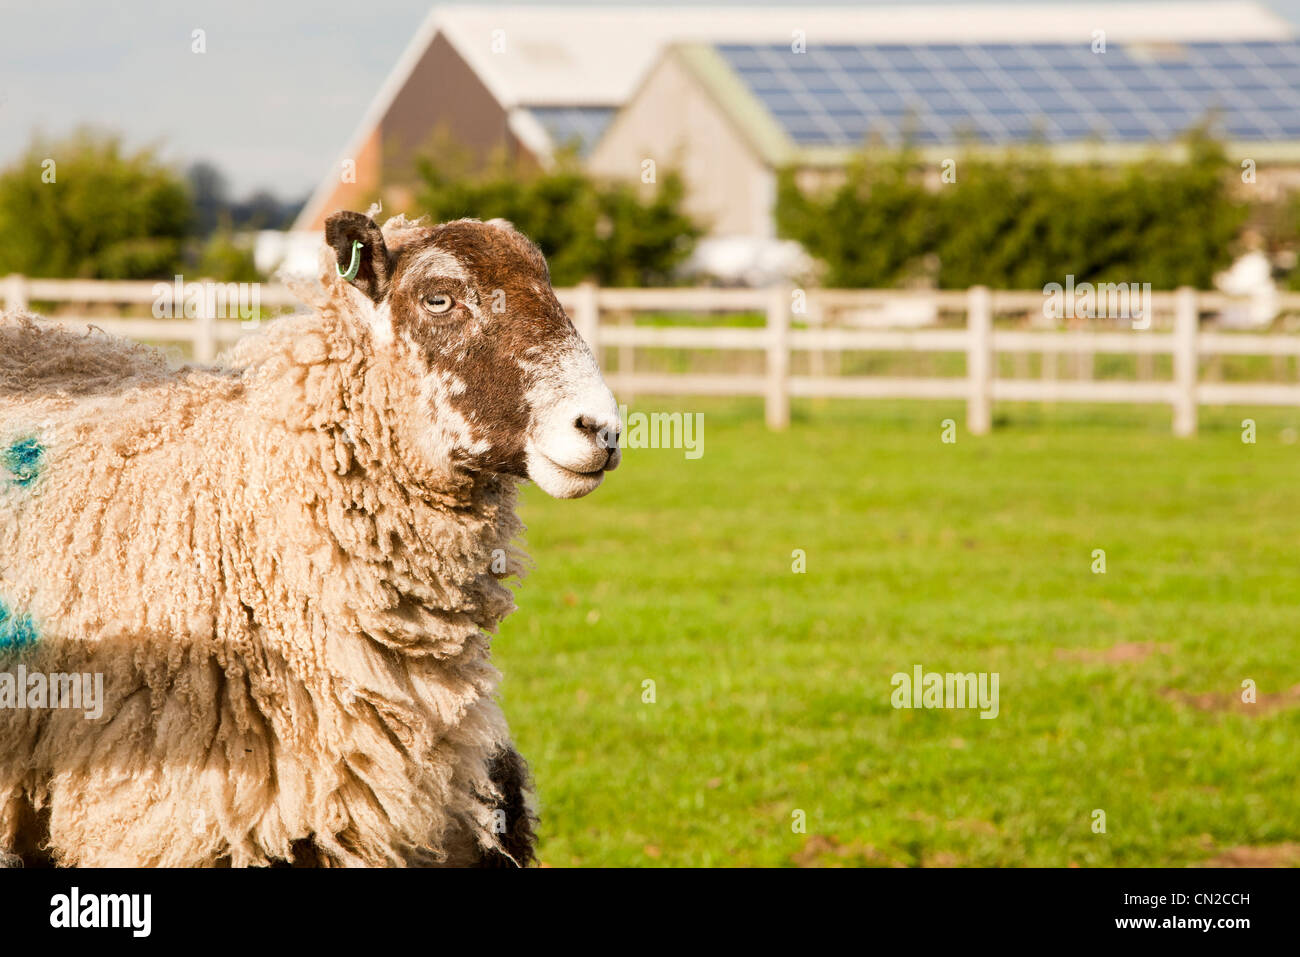 A 35 Kw pannello solare sistema su un tetto di un fienile in una fattoria in Leicestershire, Regno Unito con le pecore e gli agnelli in primo piano. Foto Stock